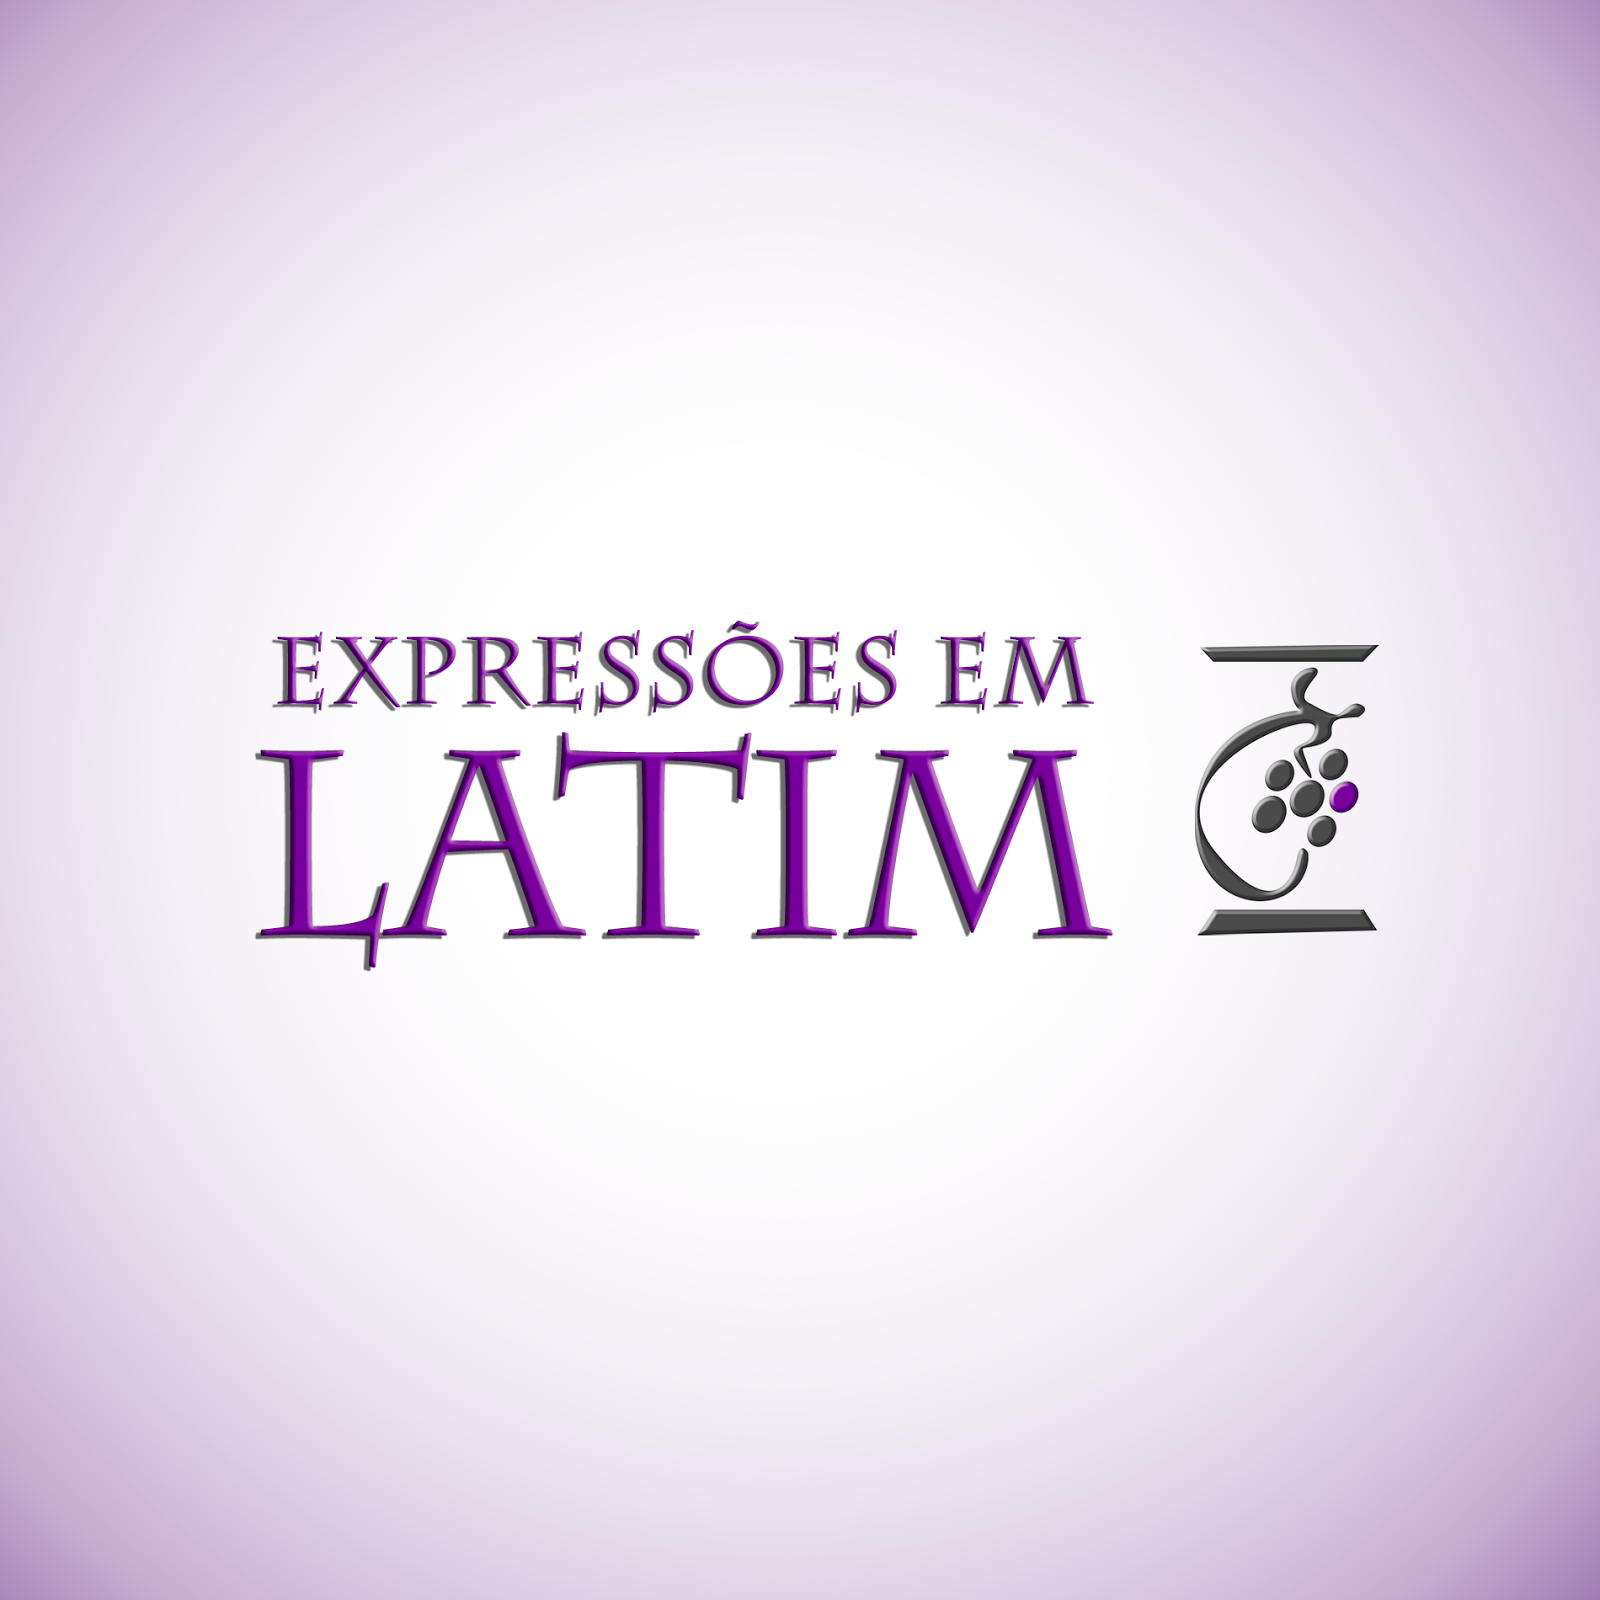 Expressões em Latim